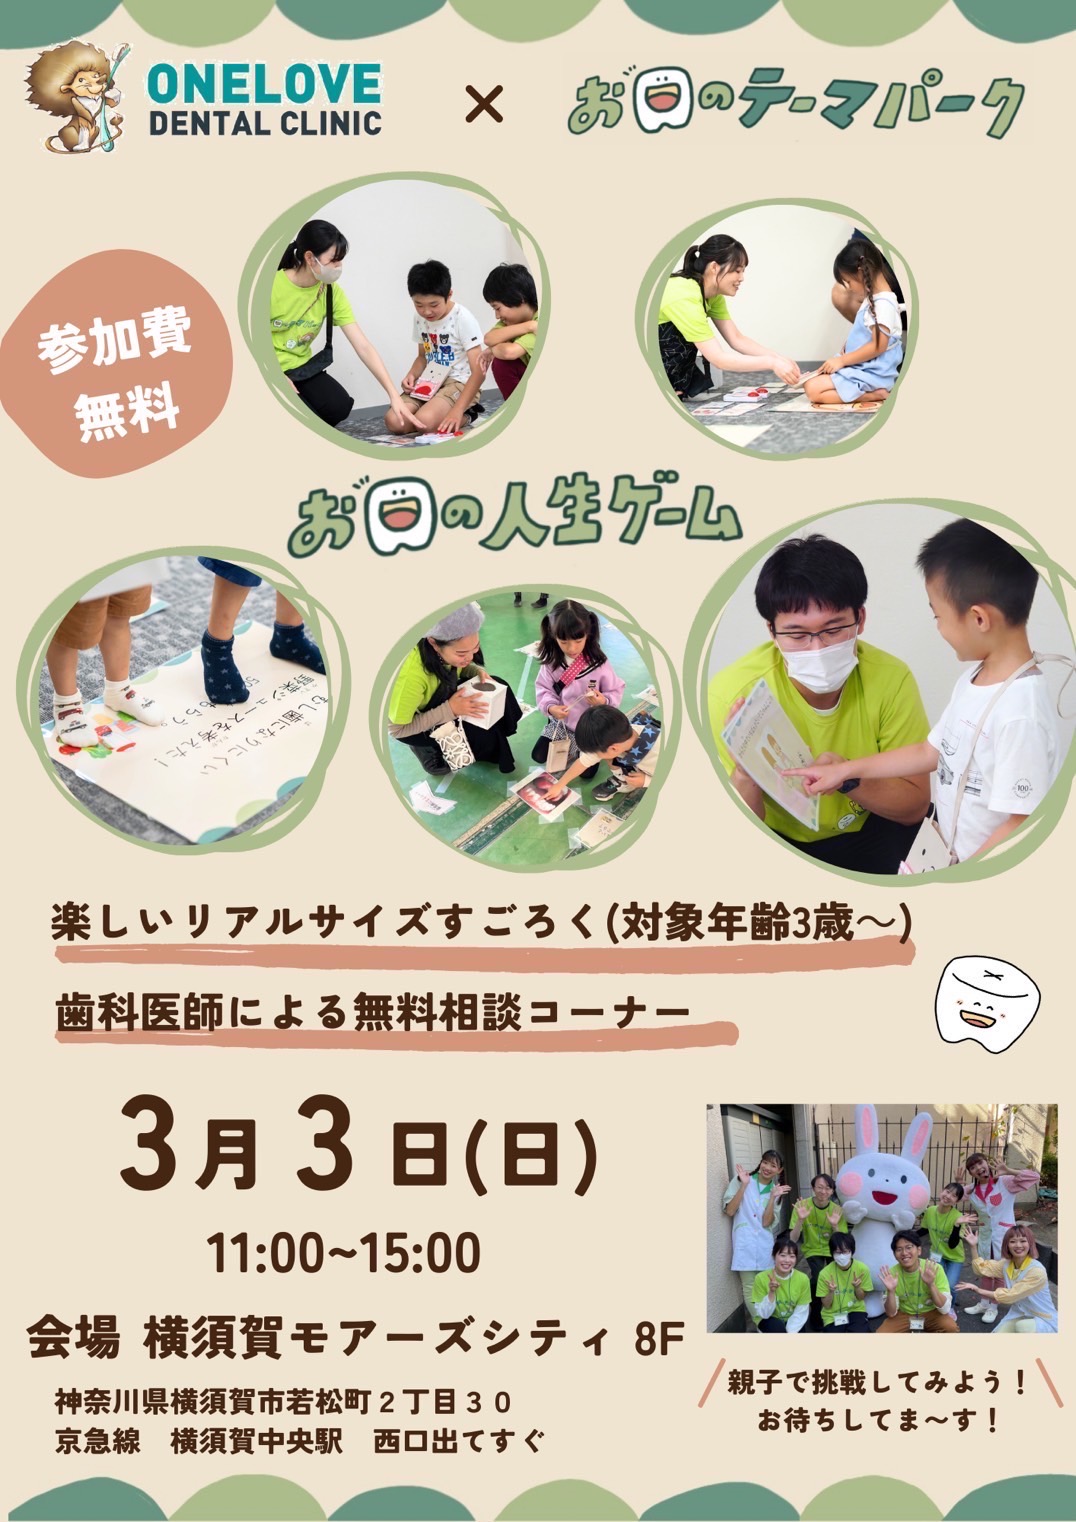 【横須賀市】横須賀モアーズシティ お口のテーマパーク開催！歯の健康について遊びながら学ぼう